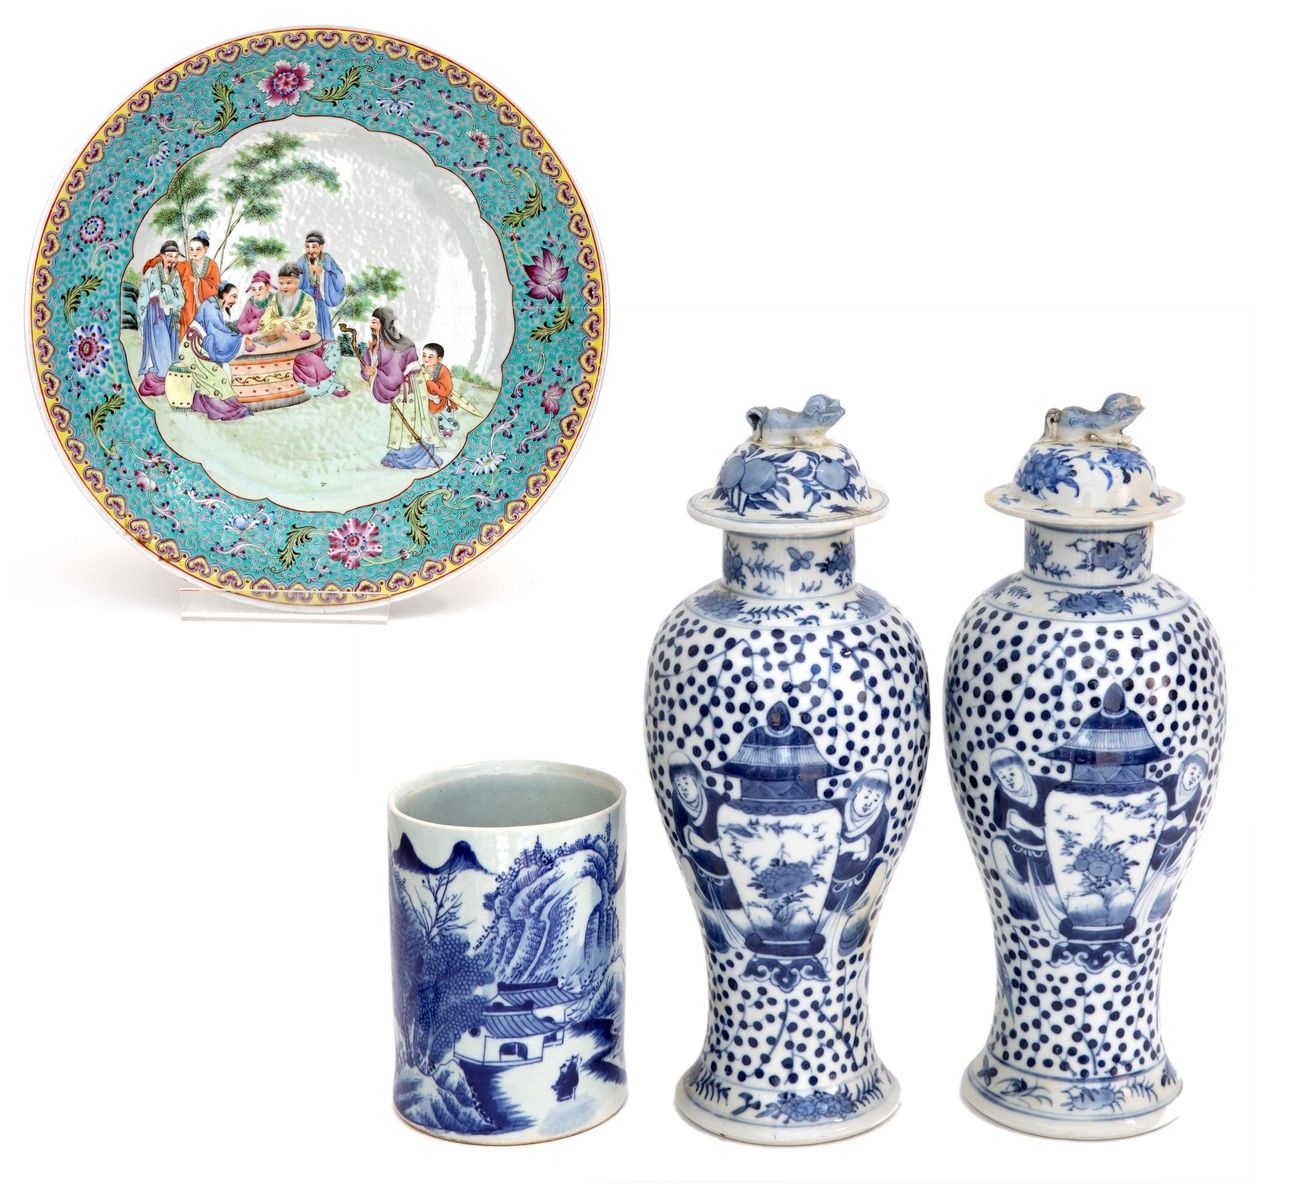 Null China, siglo XIX-XX
Lote compuesto por un par de jarrones con tapa, un pote&hellip;